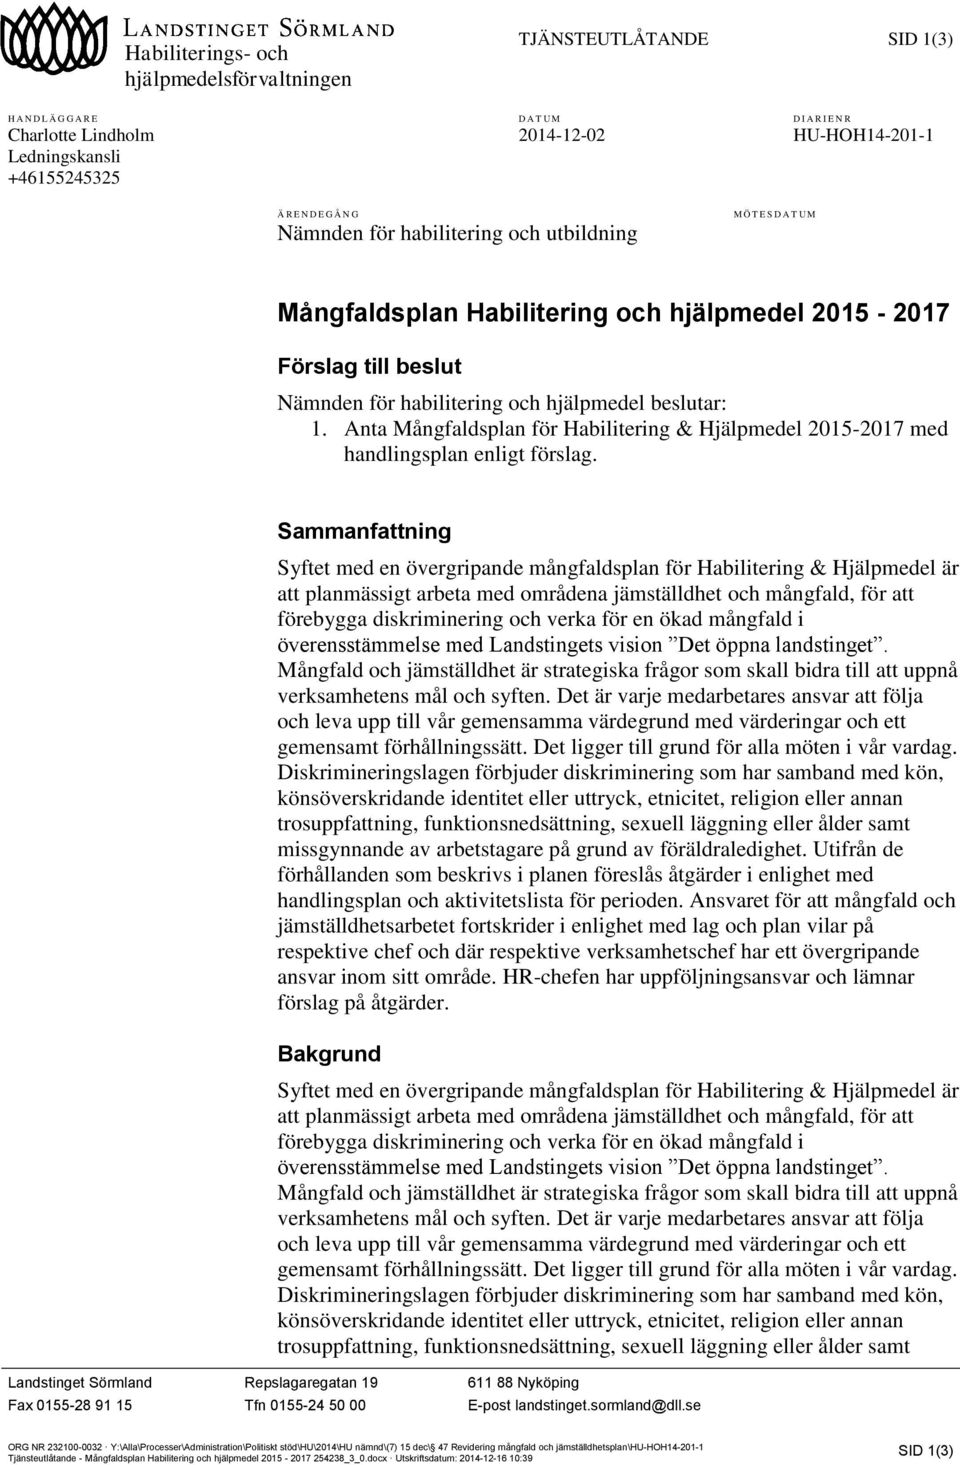 Anta Mångfaldsplan för Habilitering & Hjälpmedel 2015-2017 med handlingsplan enligt förslag.